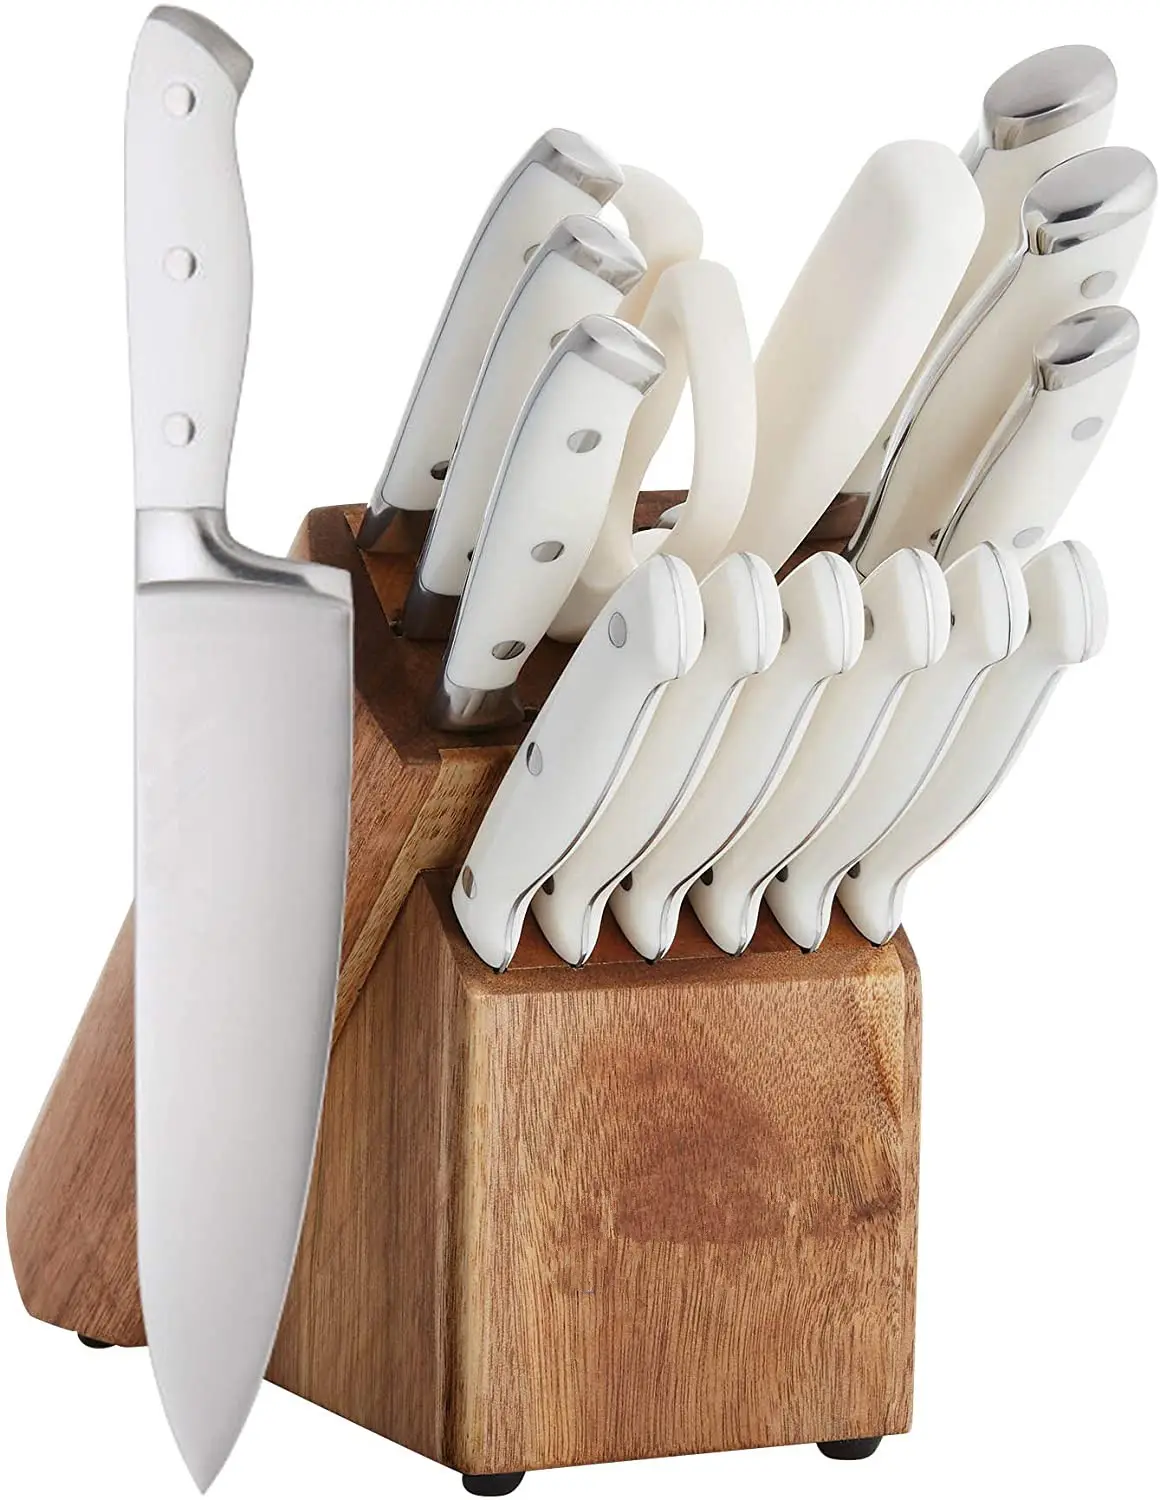 Blocs de ciseaux couteaux professionnels, fabrication unique, ensemble de couteaux avec bloc de support en bois et acier à aiguiser, 21 ou 15 pièces